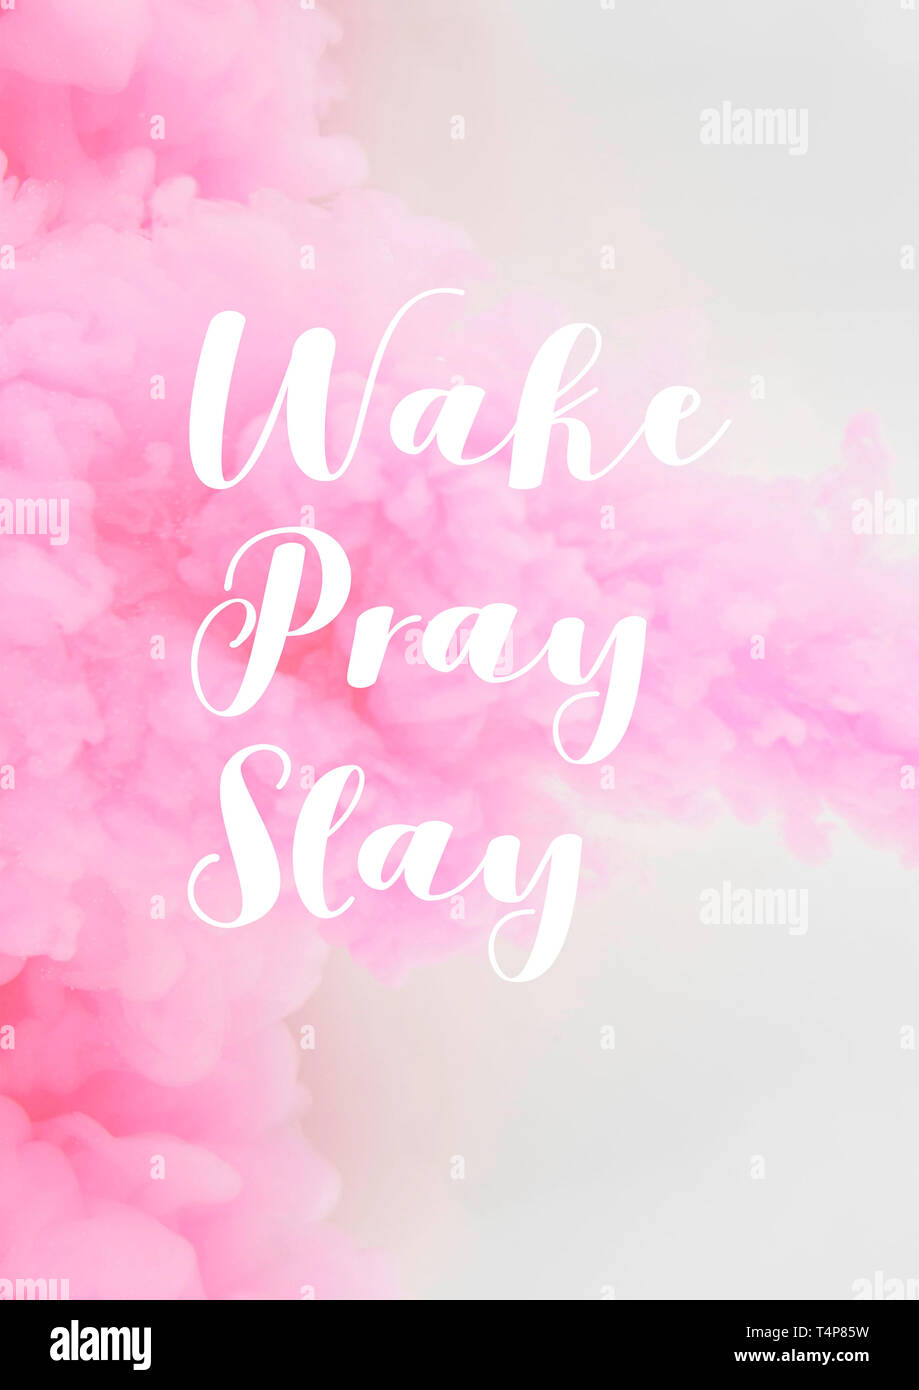 Wake pregare uccidere. Motivazionale poster preventivo tipografia. Foto Stock